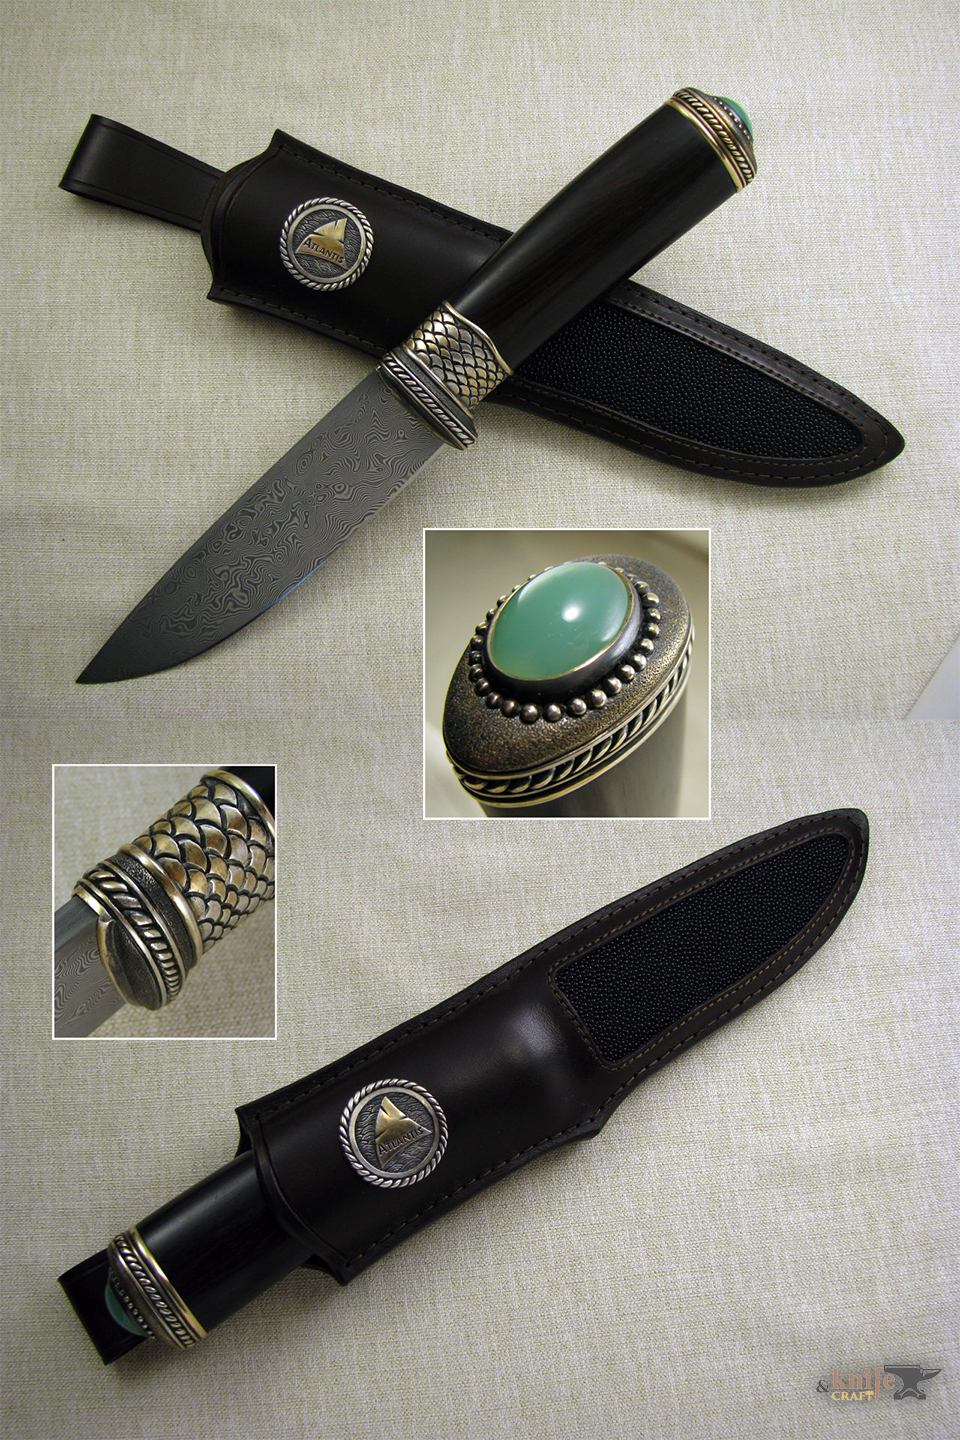 авторский дорогой нож "Морской" из нержавеющего дамасак от zladinox, черной рукояткой с камнем